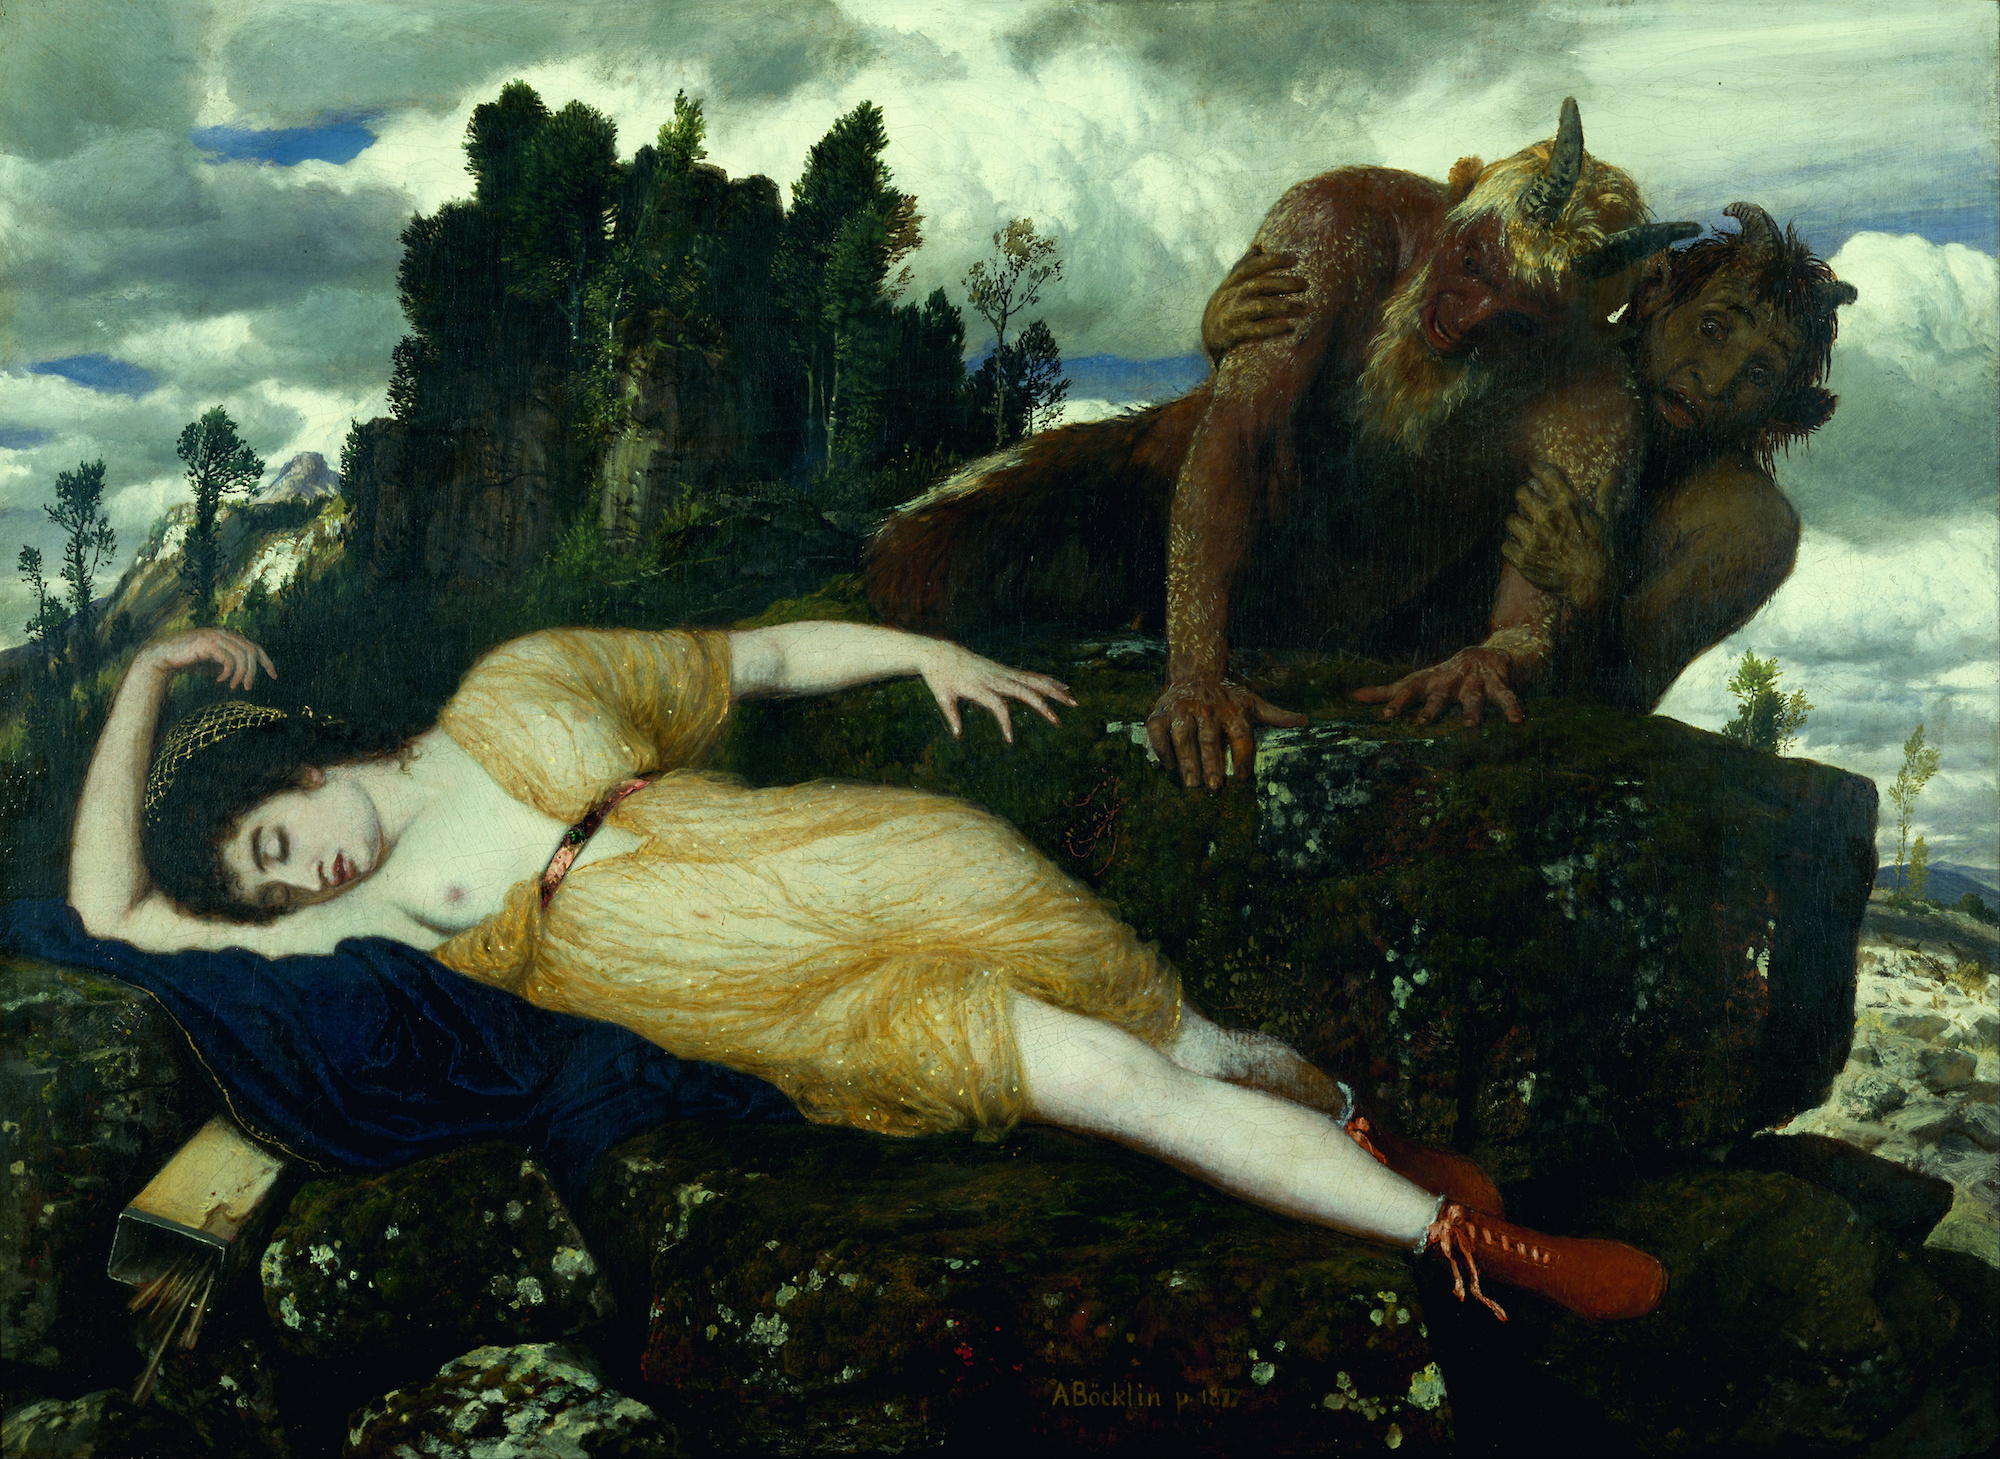 İki Yaratık İzlerken Uyuyan Diana by Arnold Böcklin - 1877 